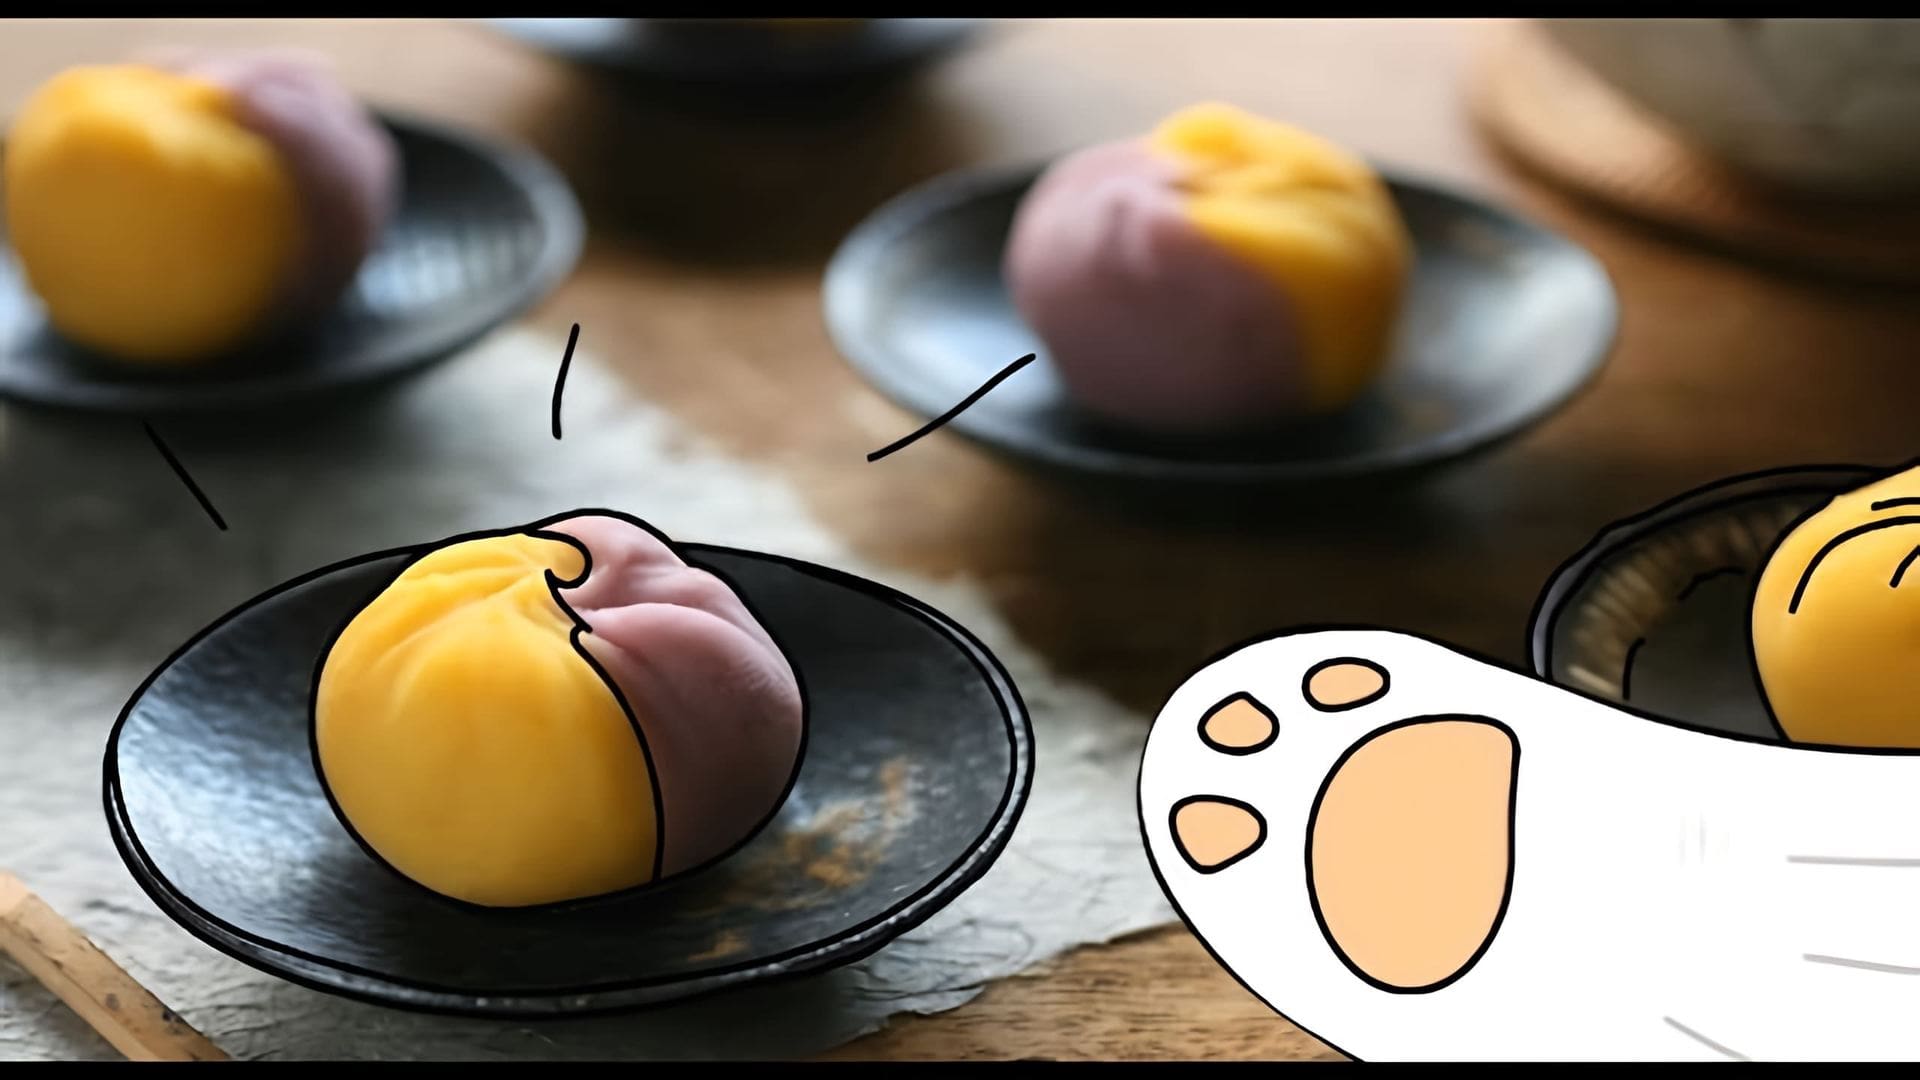 В этом видео демонстрируется рецепт приготовления японского десерта под названием "шакин шибари"